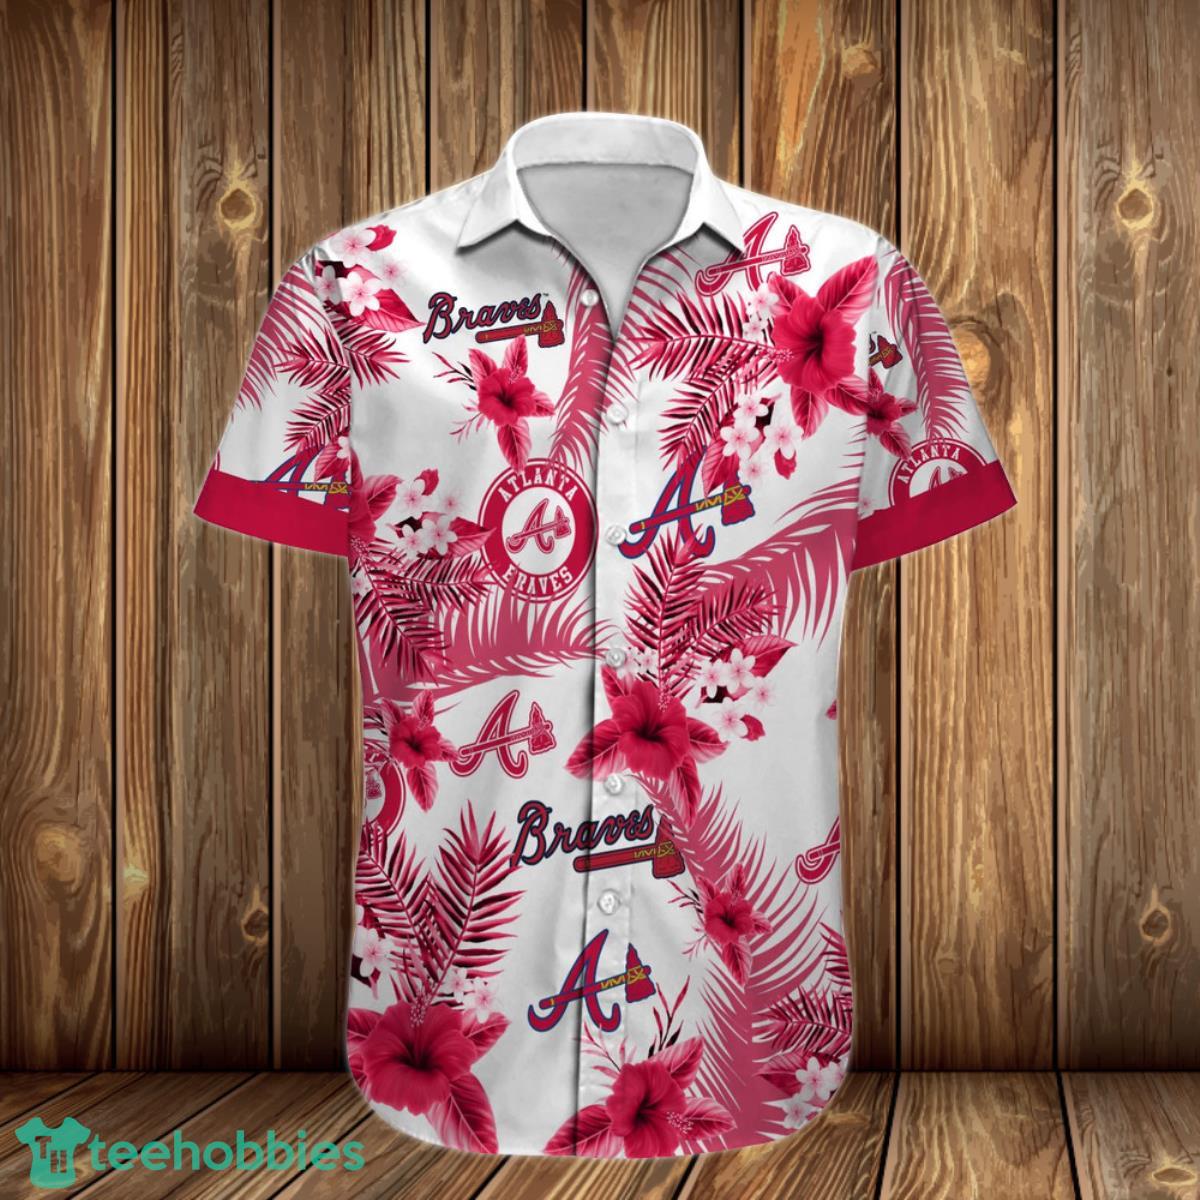 Atlanta Braves Vintage Mlb Hawaiian Shirt And Short For Fans